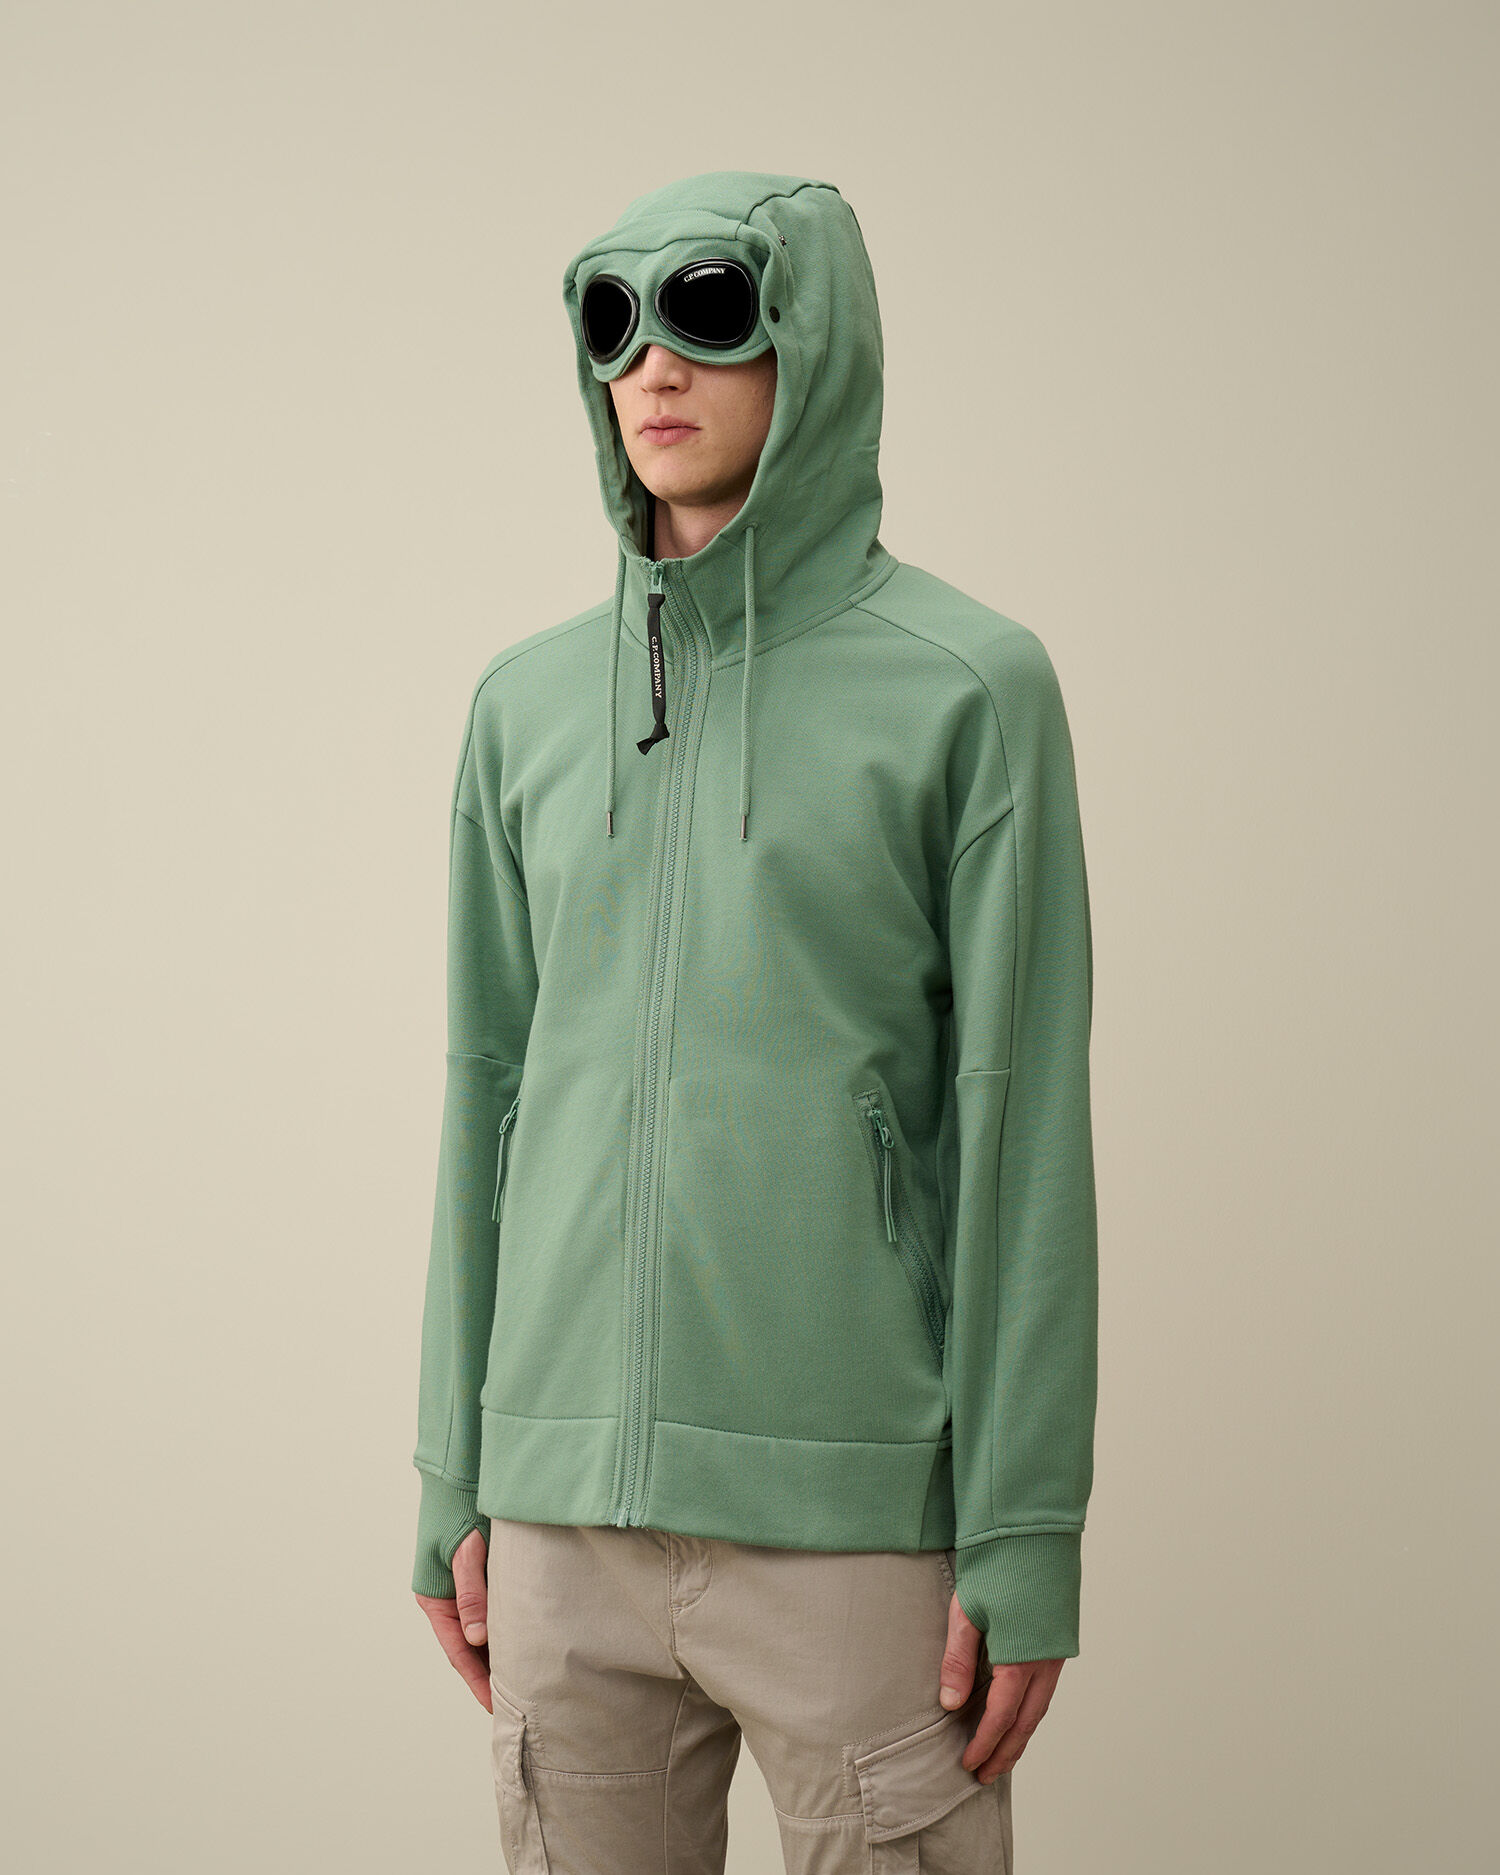 Men's Sweatshirts & Hoodies with Lenses | C.P. Company